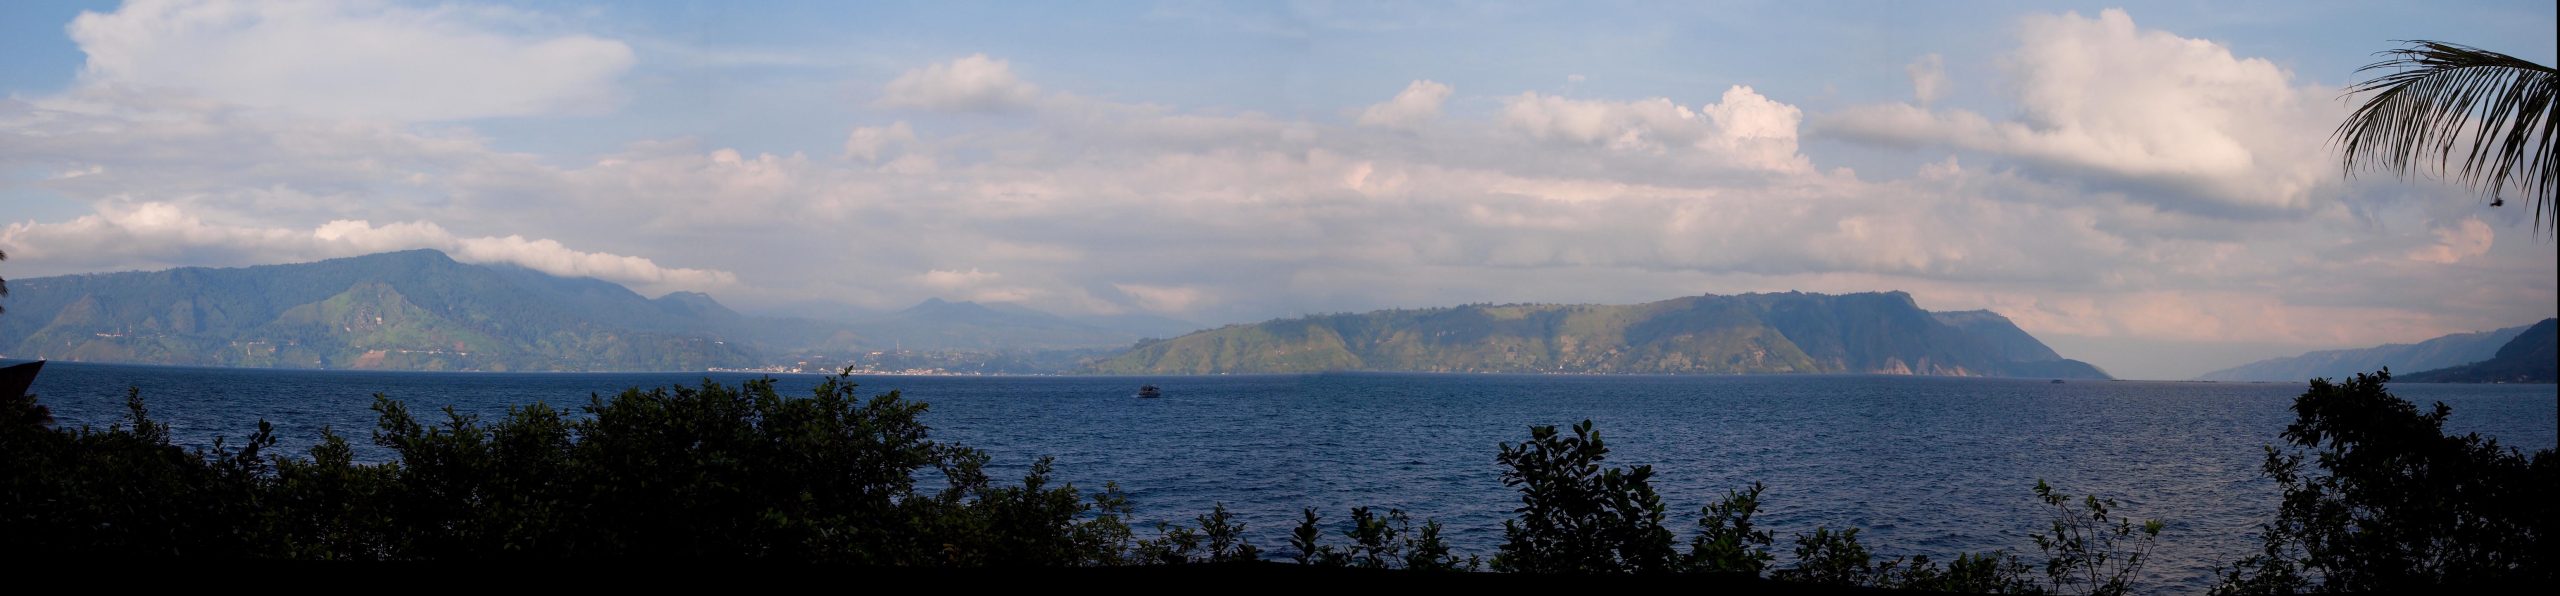 بحيرة توبا البركانية فى اندونسيا